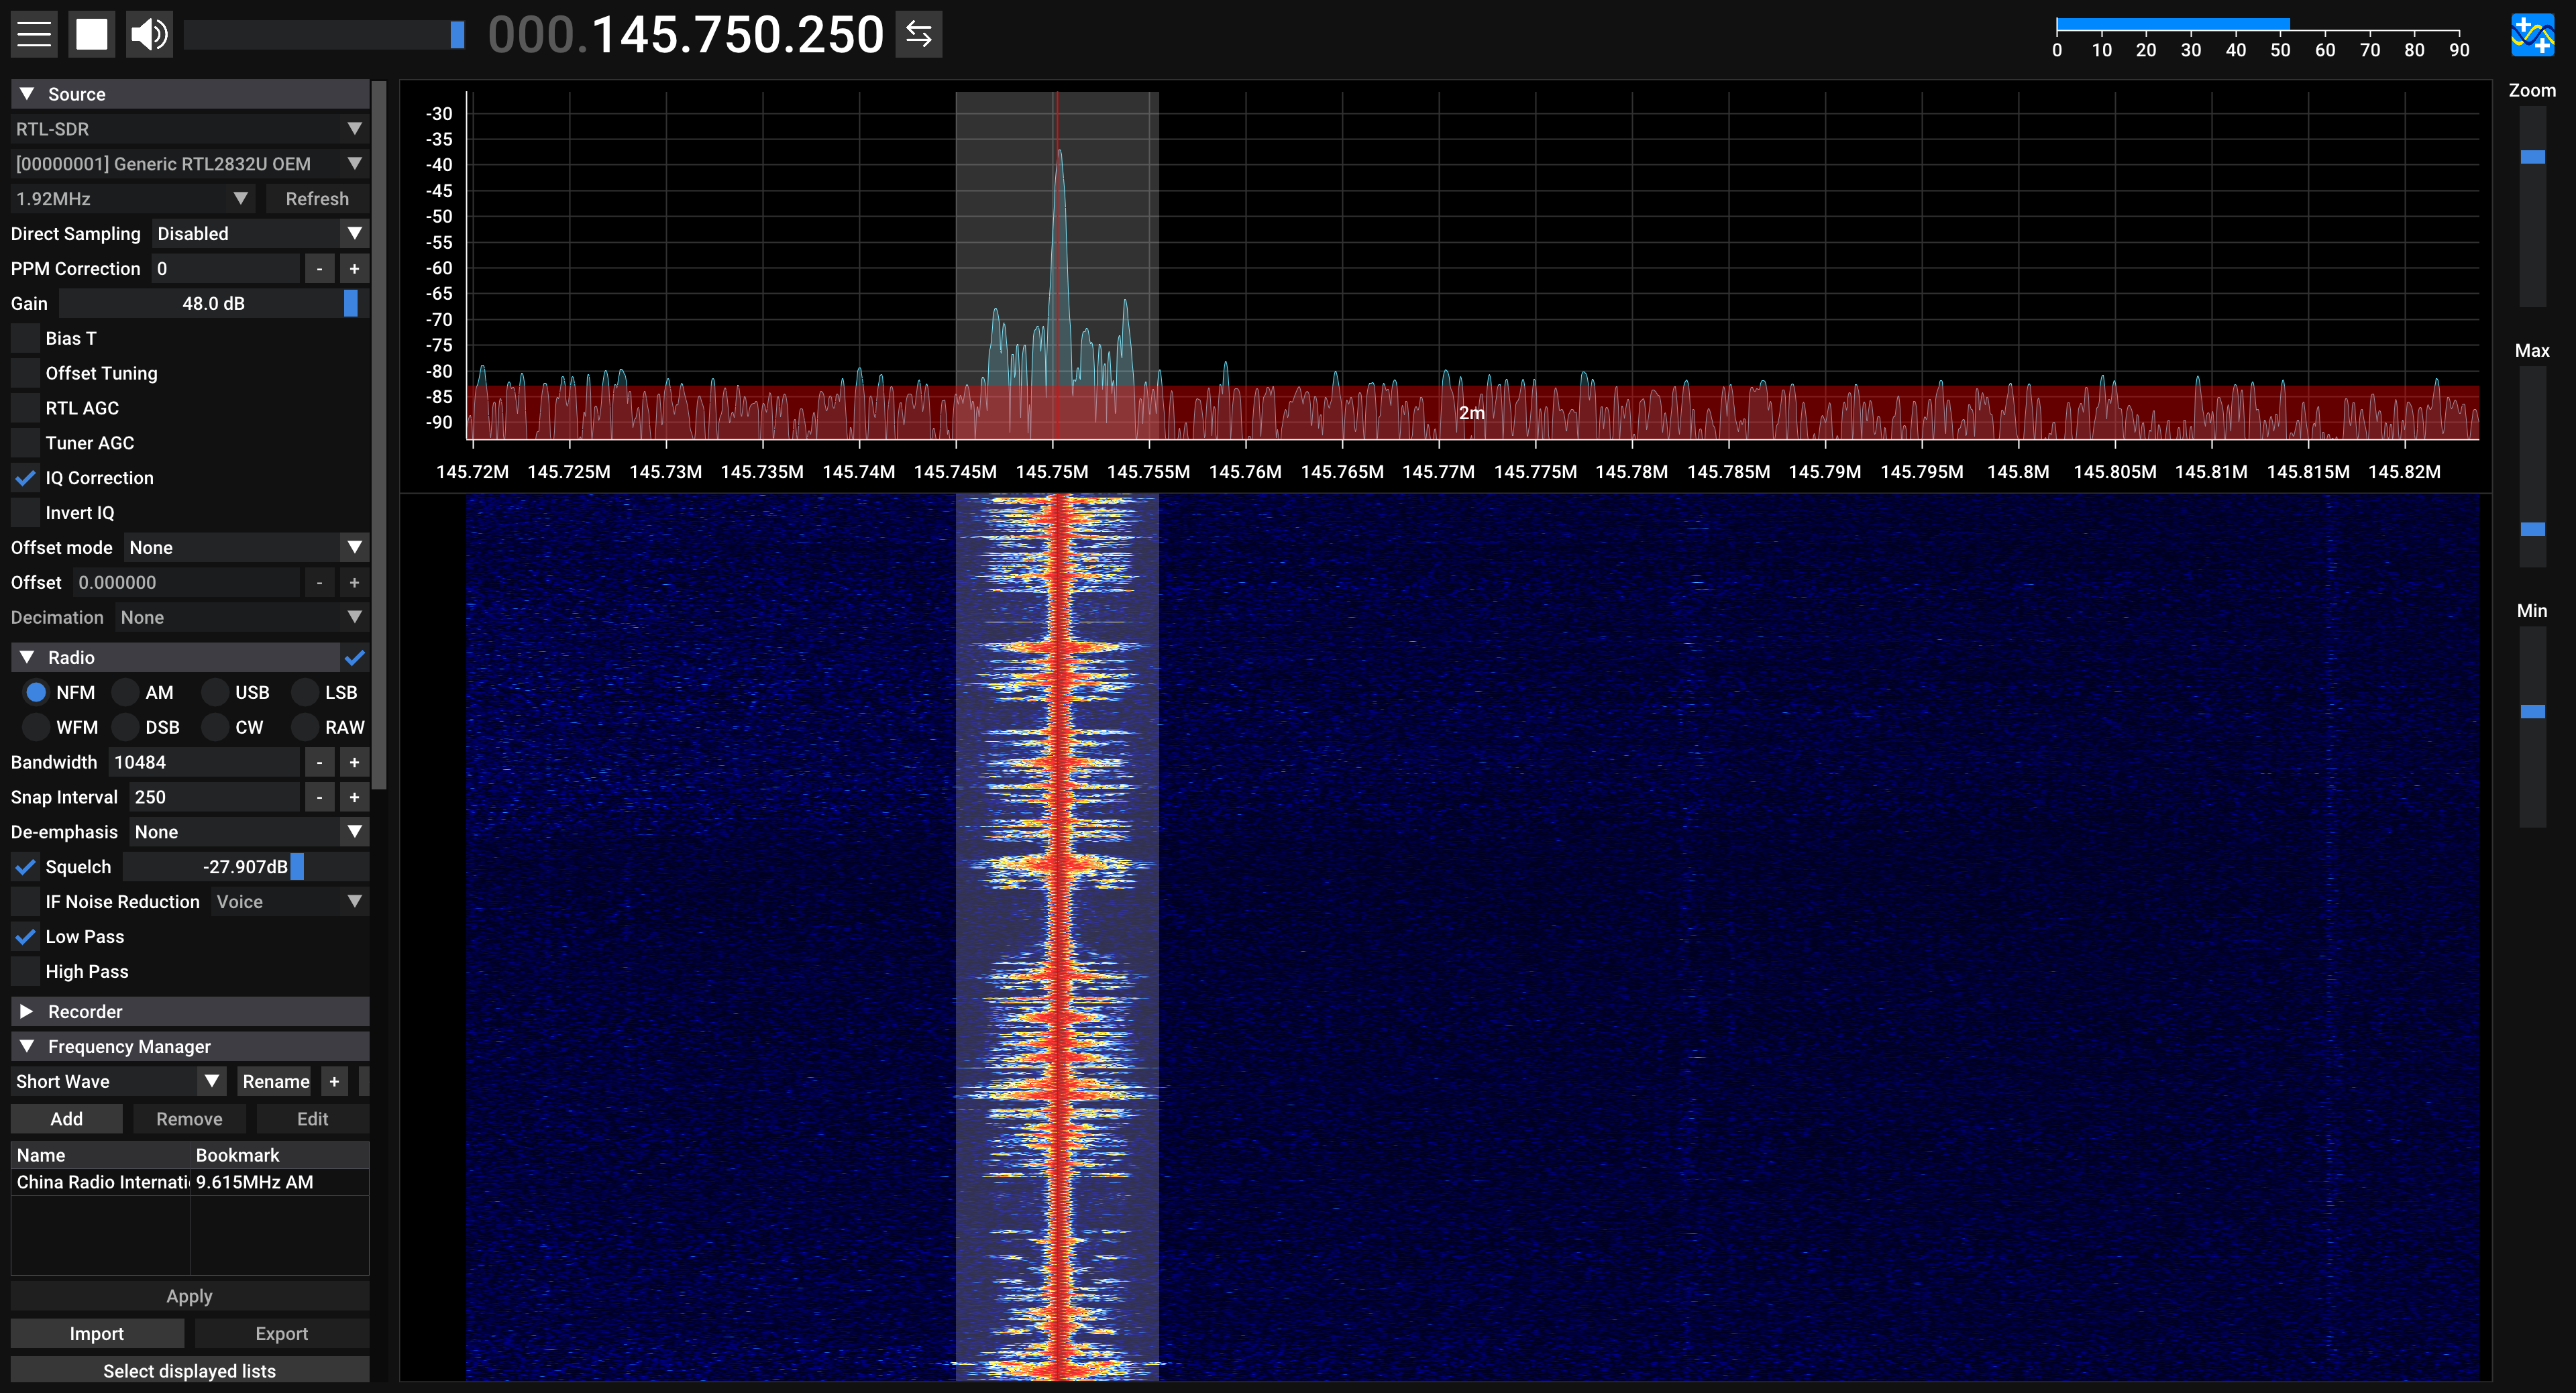 An FM signal at 145.75 MHz.